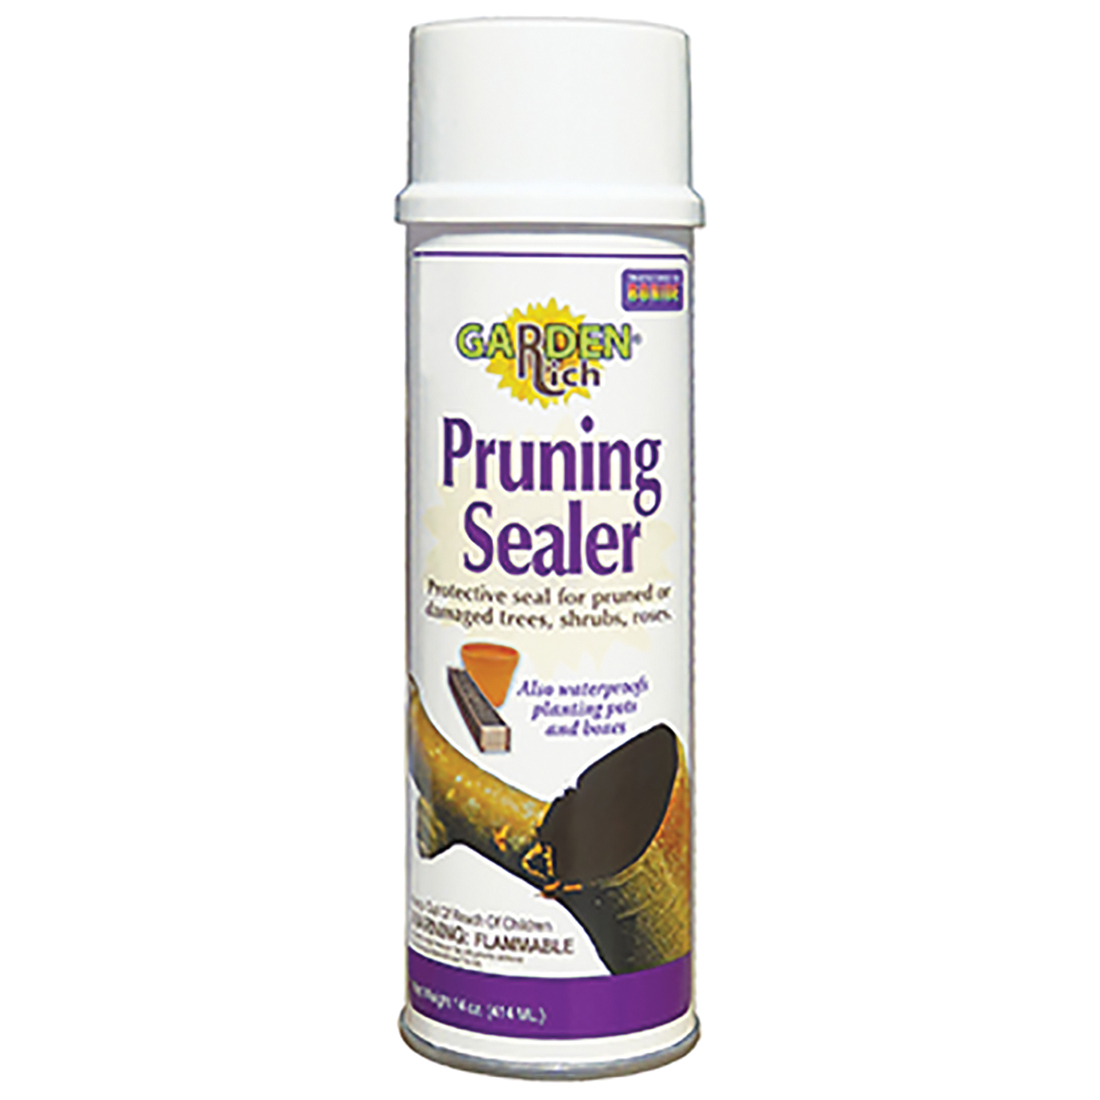 221 Pruning Sealer, Liquid, Petroleum Solvent, Black, 14 oz Aerosol Can